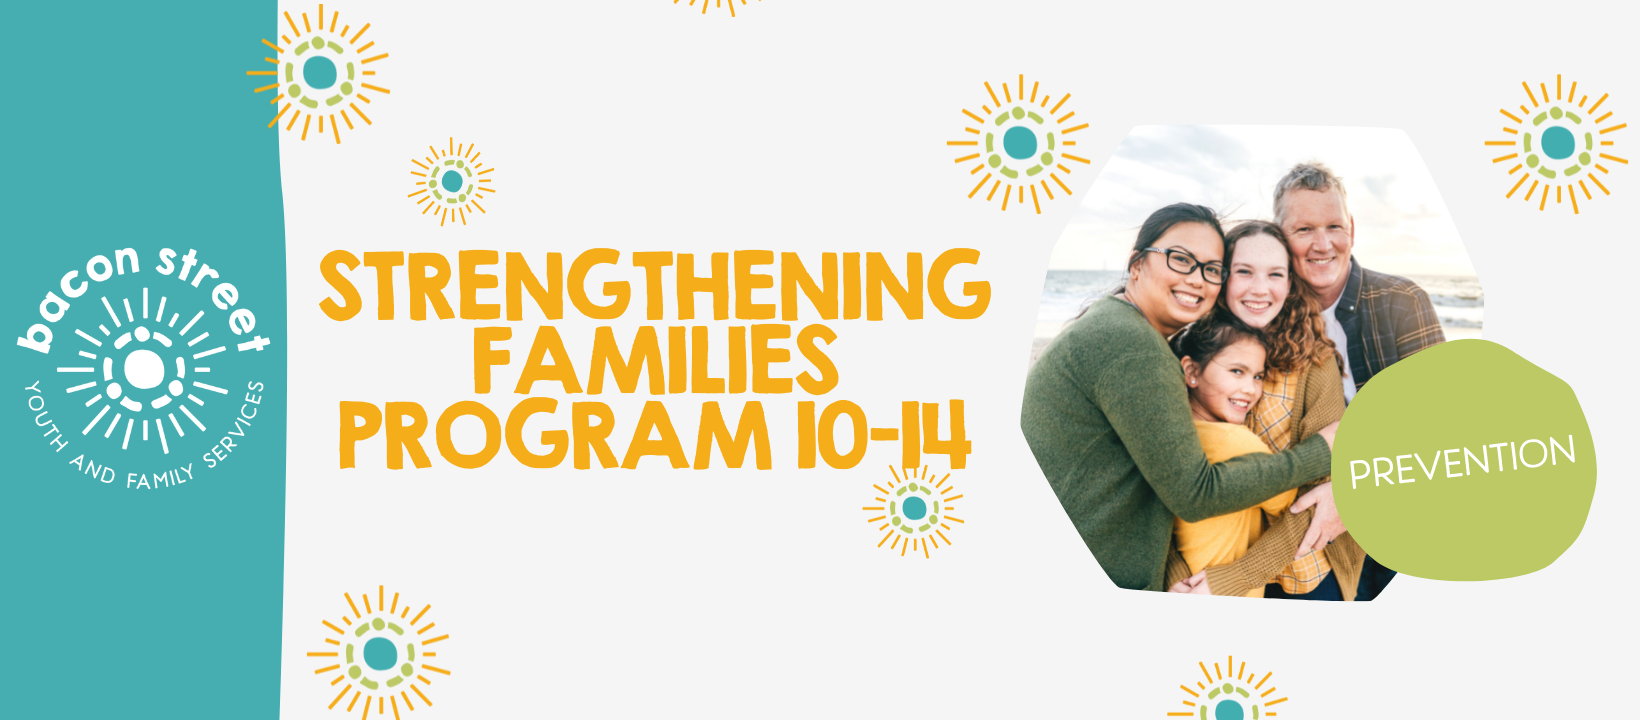 Strengthening Families Program 10-14